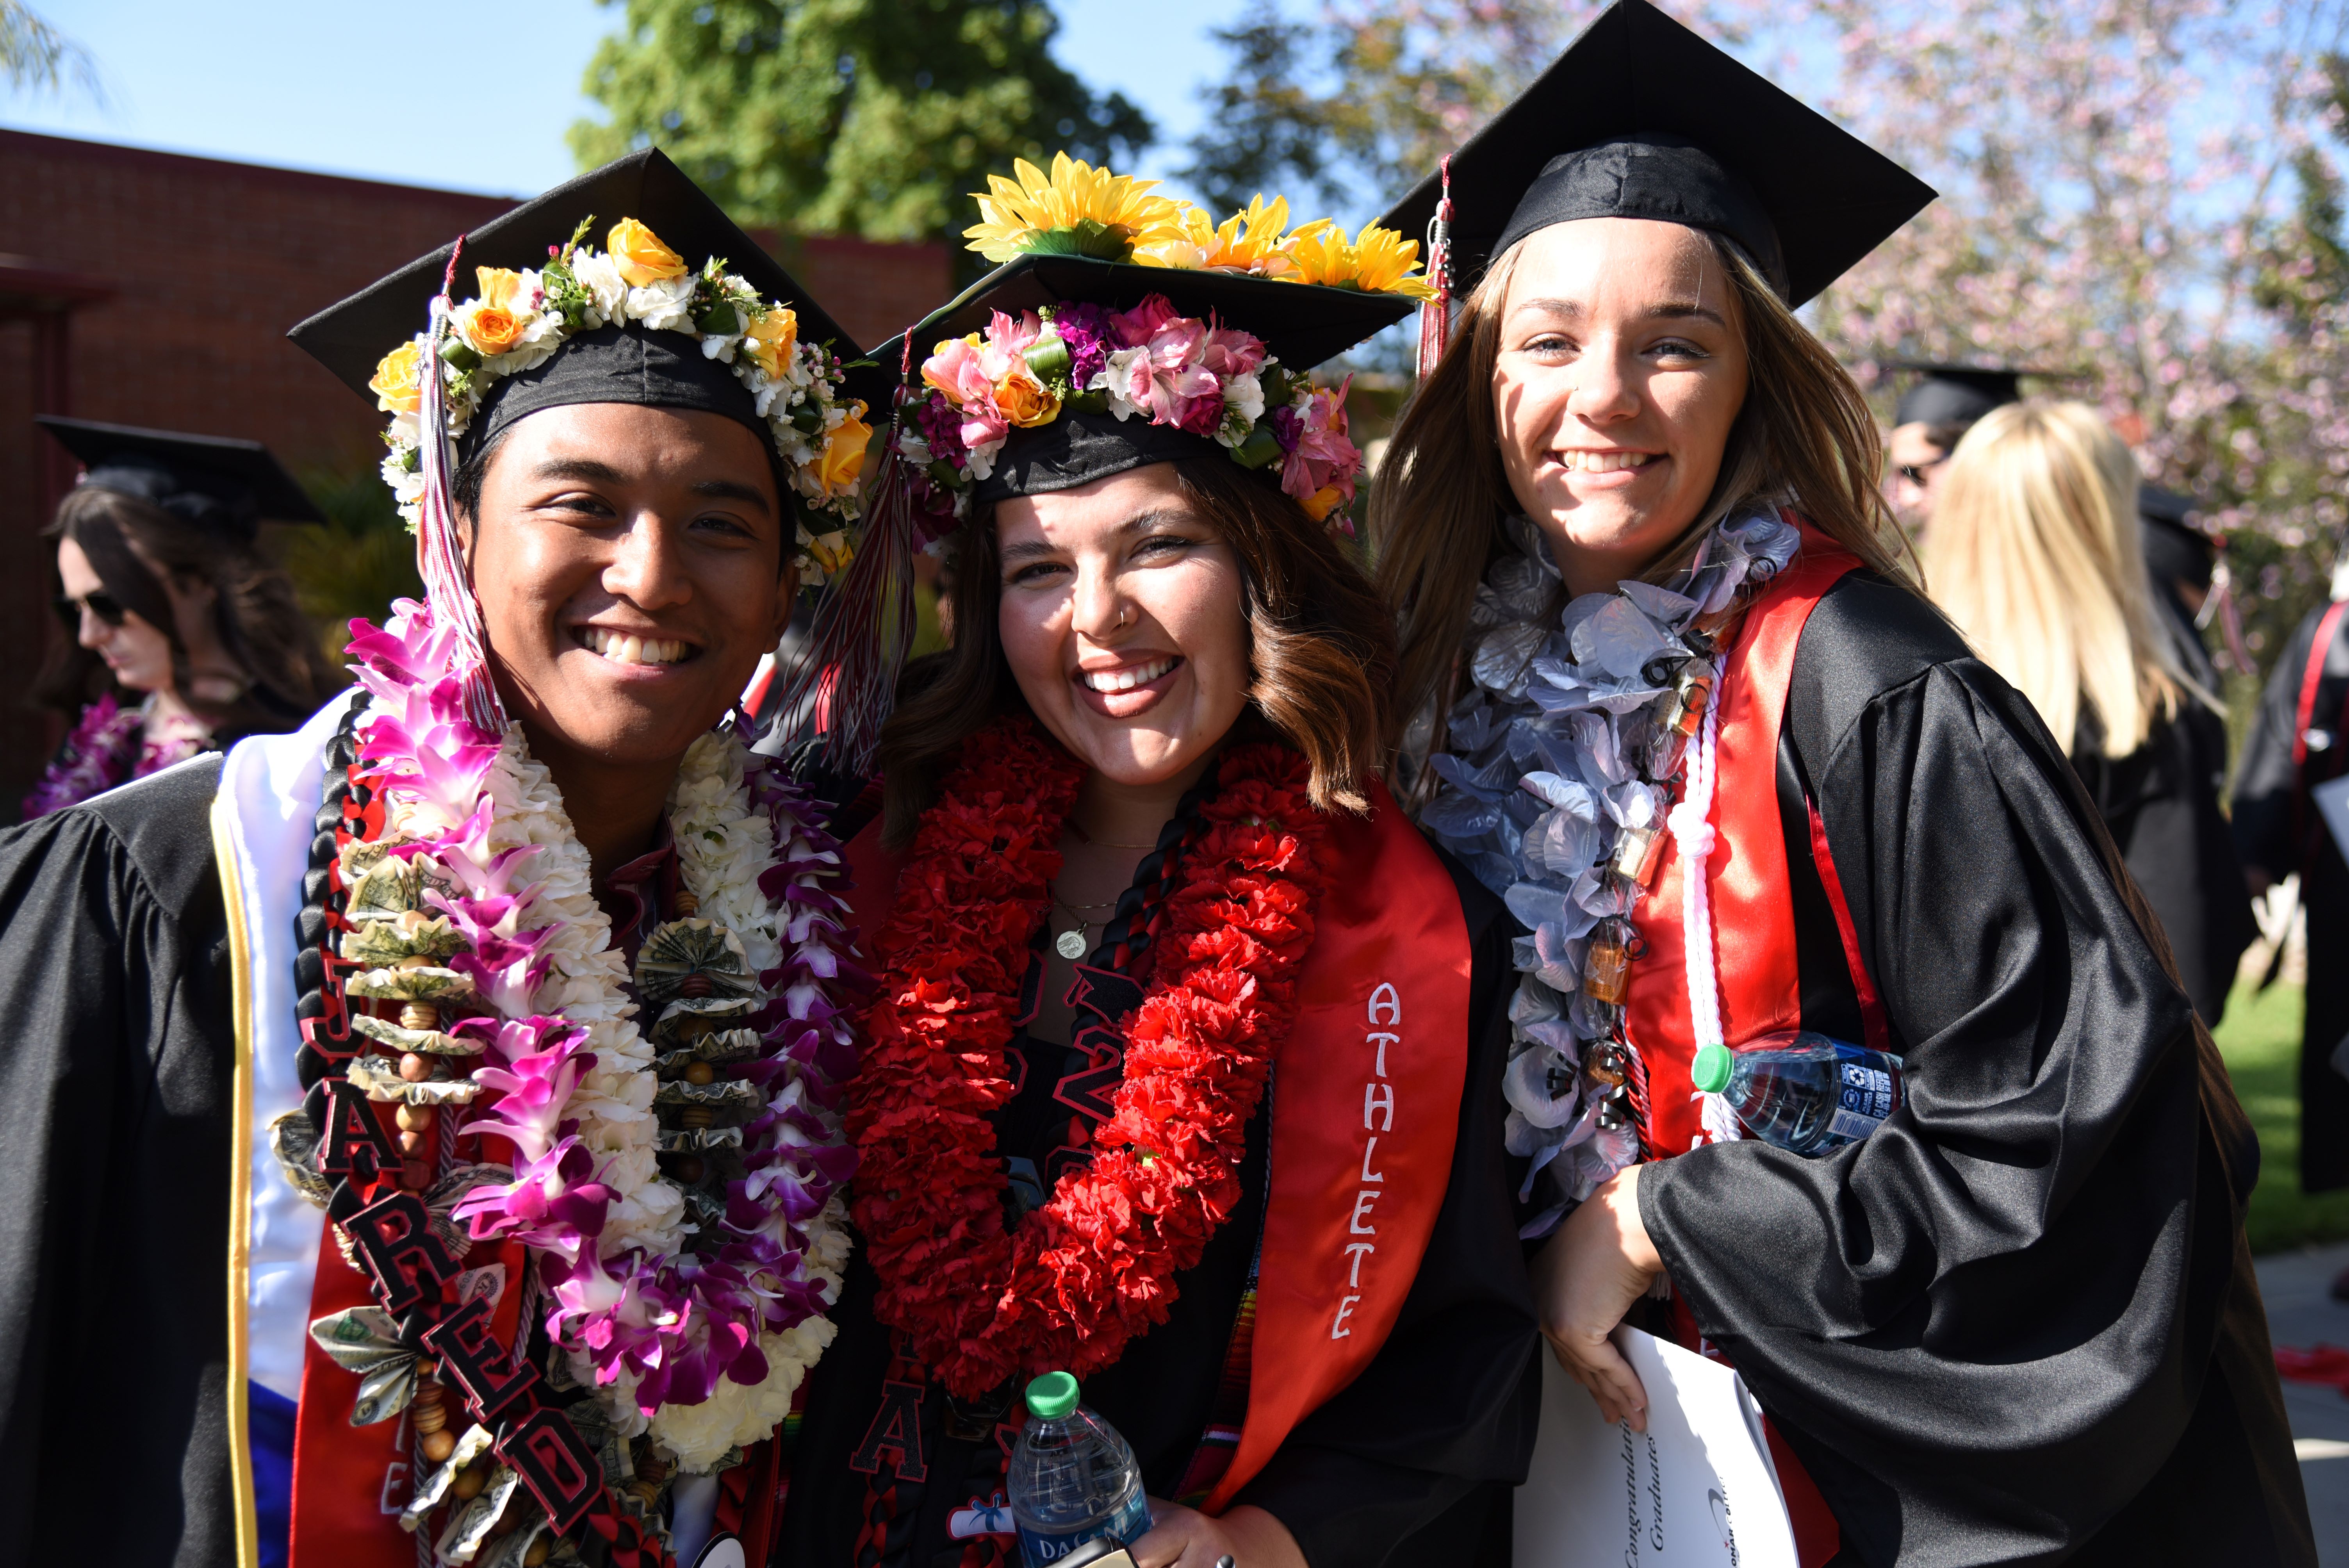 Conmemorando Hitos Académicos: Graduaciones en los Colegios Comunitarios de San Diego y el Condado Imperial